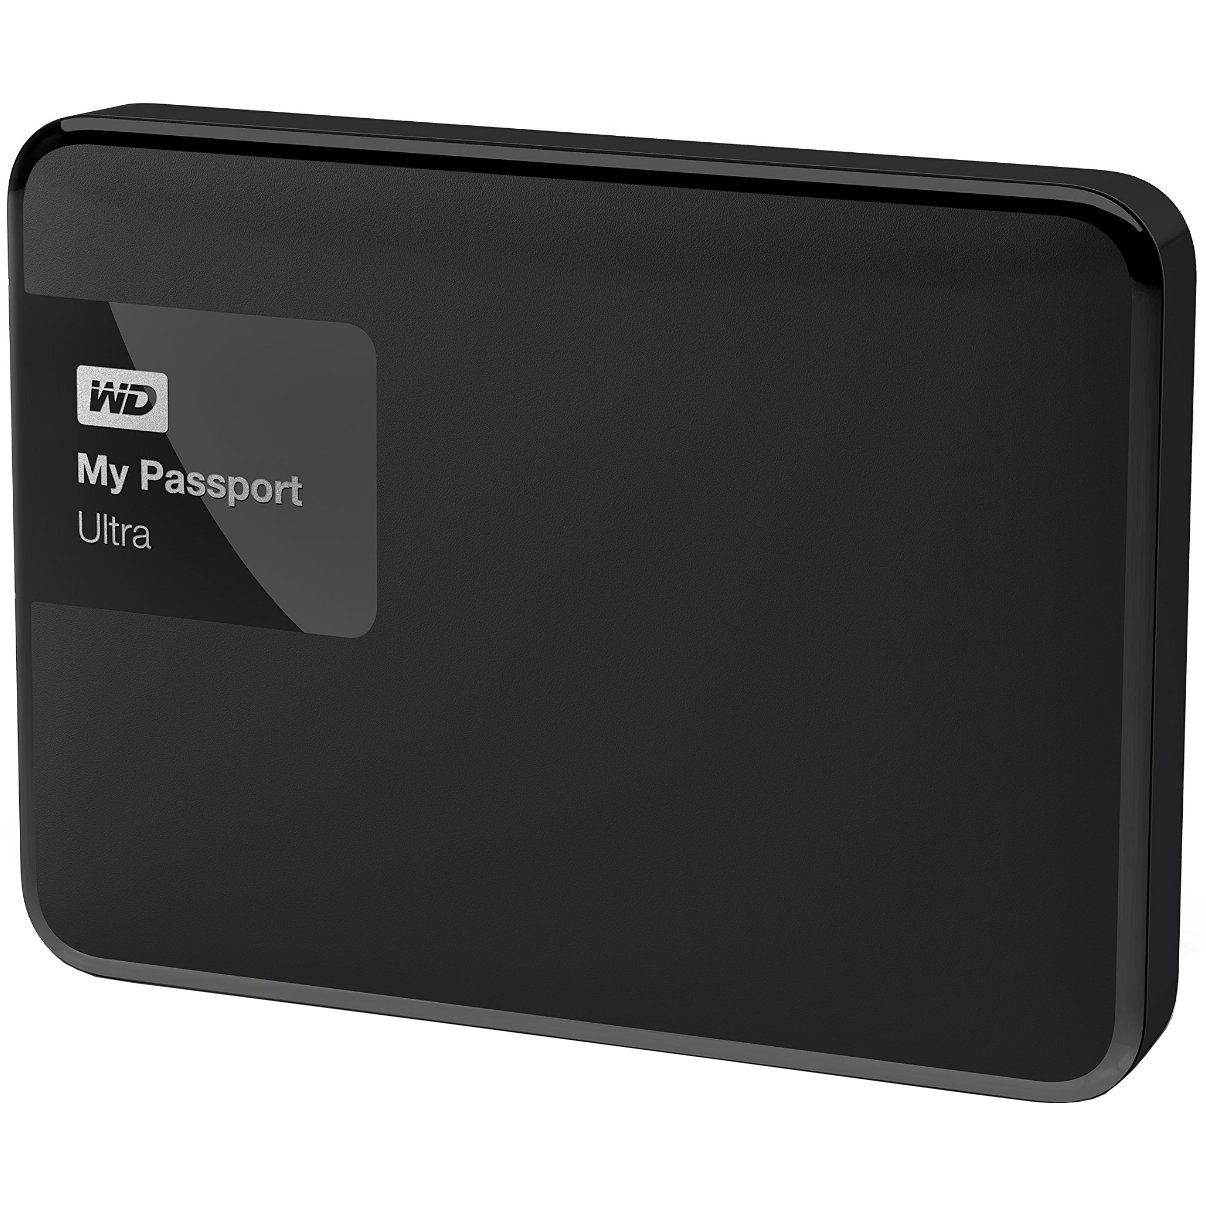  HDD extern WD My Passport Ultra 2TB, 2.5", USB 3.0, Negru 